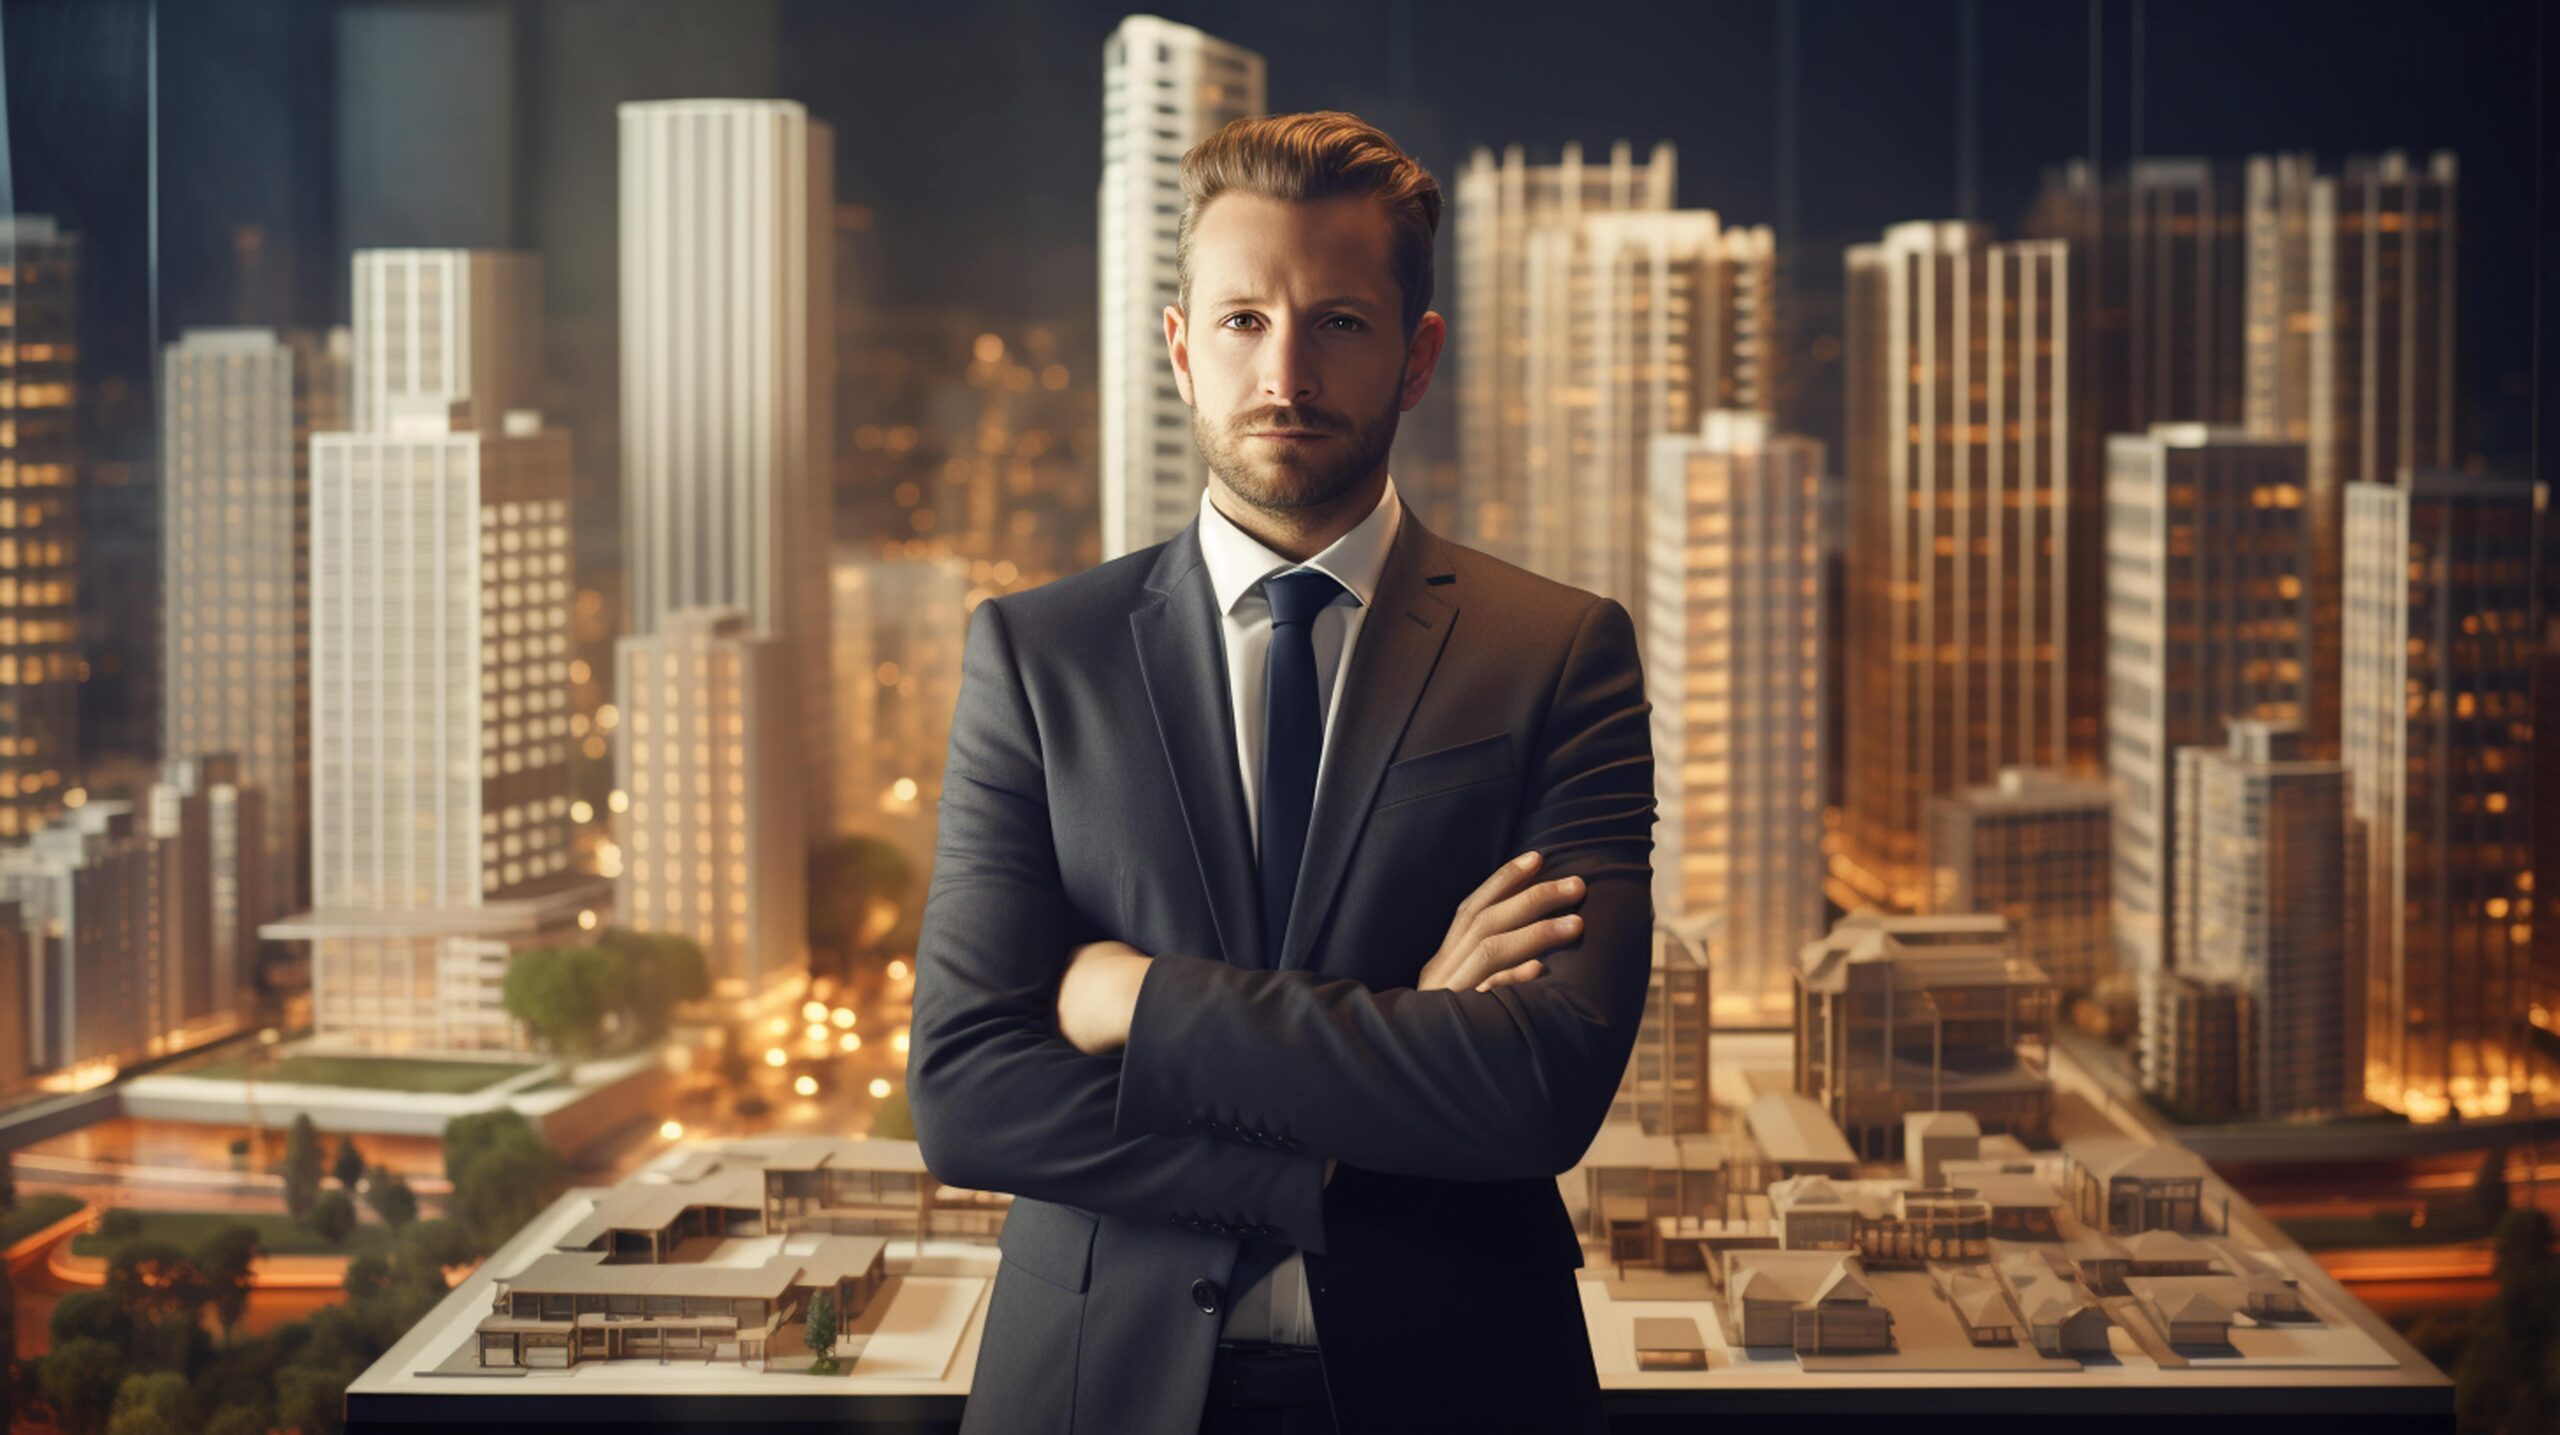 Homem de negócios com traje formal em pé diante de uma maquete arquitetônica de uma cidade, representando o profissionalismo no setor imobiliário. Como consultar o CRECI de um corretor.